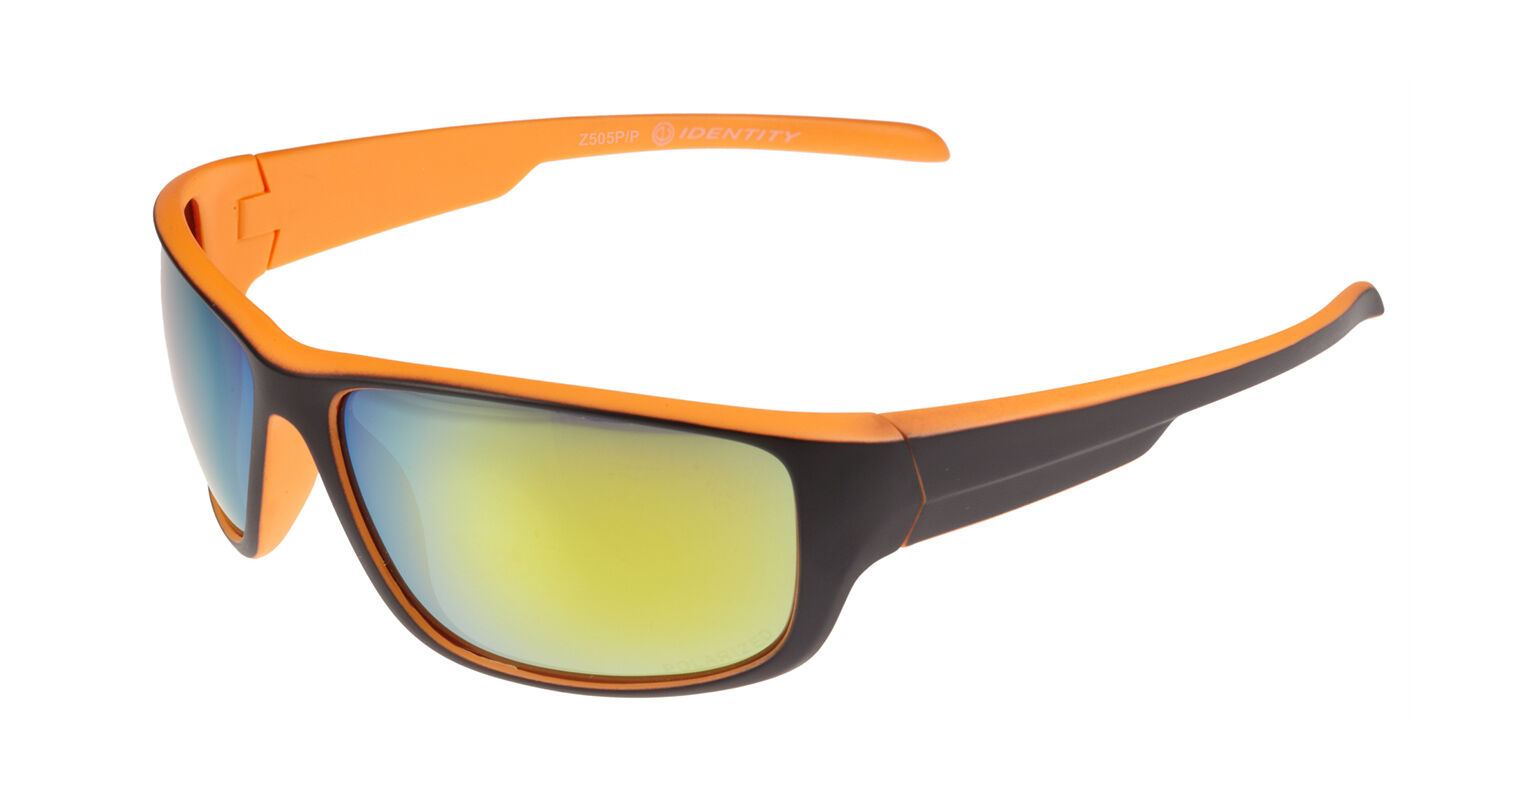 Slnečné okuliare polarizačné Sport oranž./Z505P/P